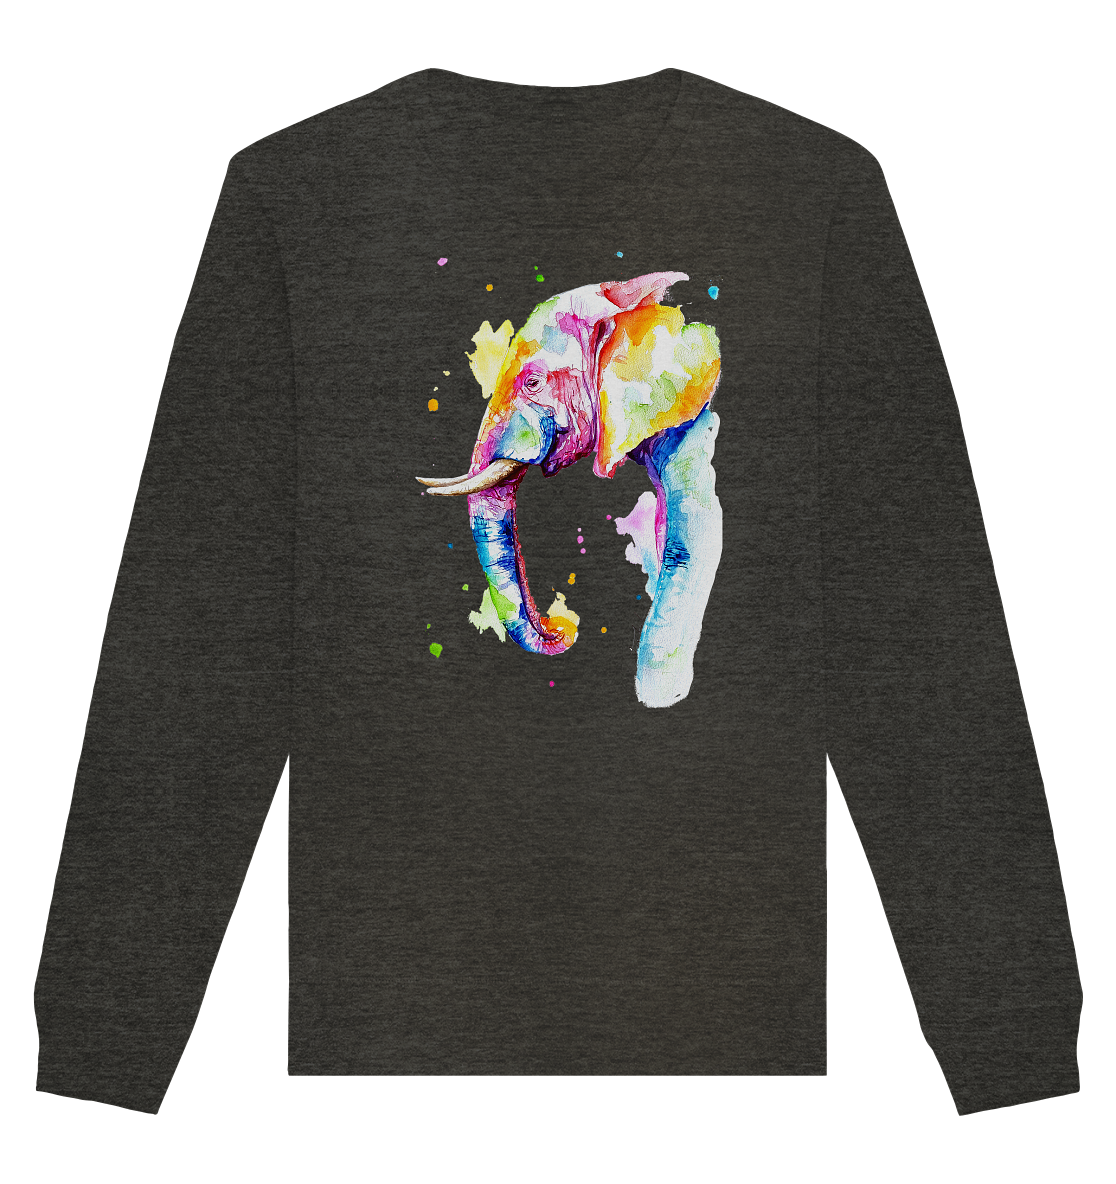 Bunter Elefant - Organic Basic Unisex Sweatshirt